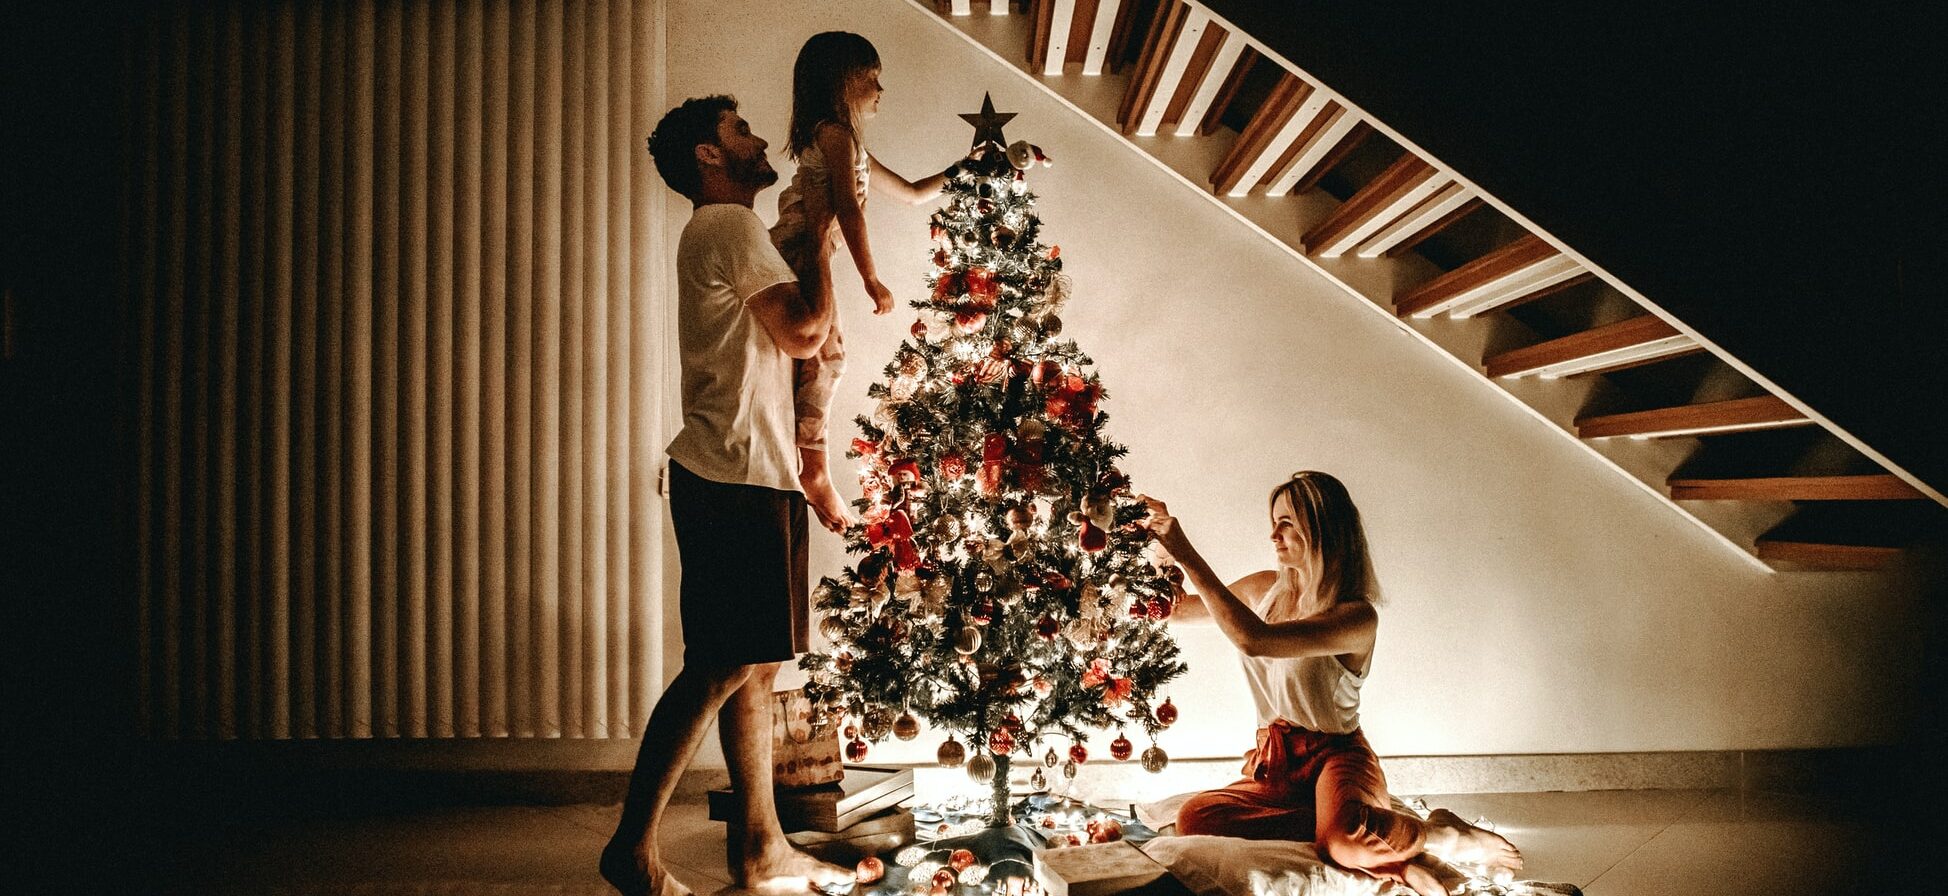 Twee mensen met hun kind bij de kerstboom.